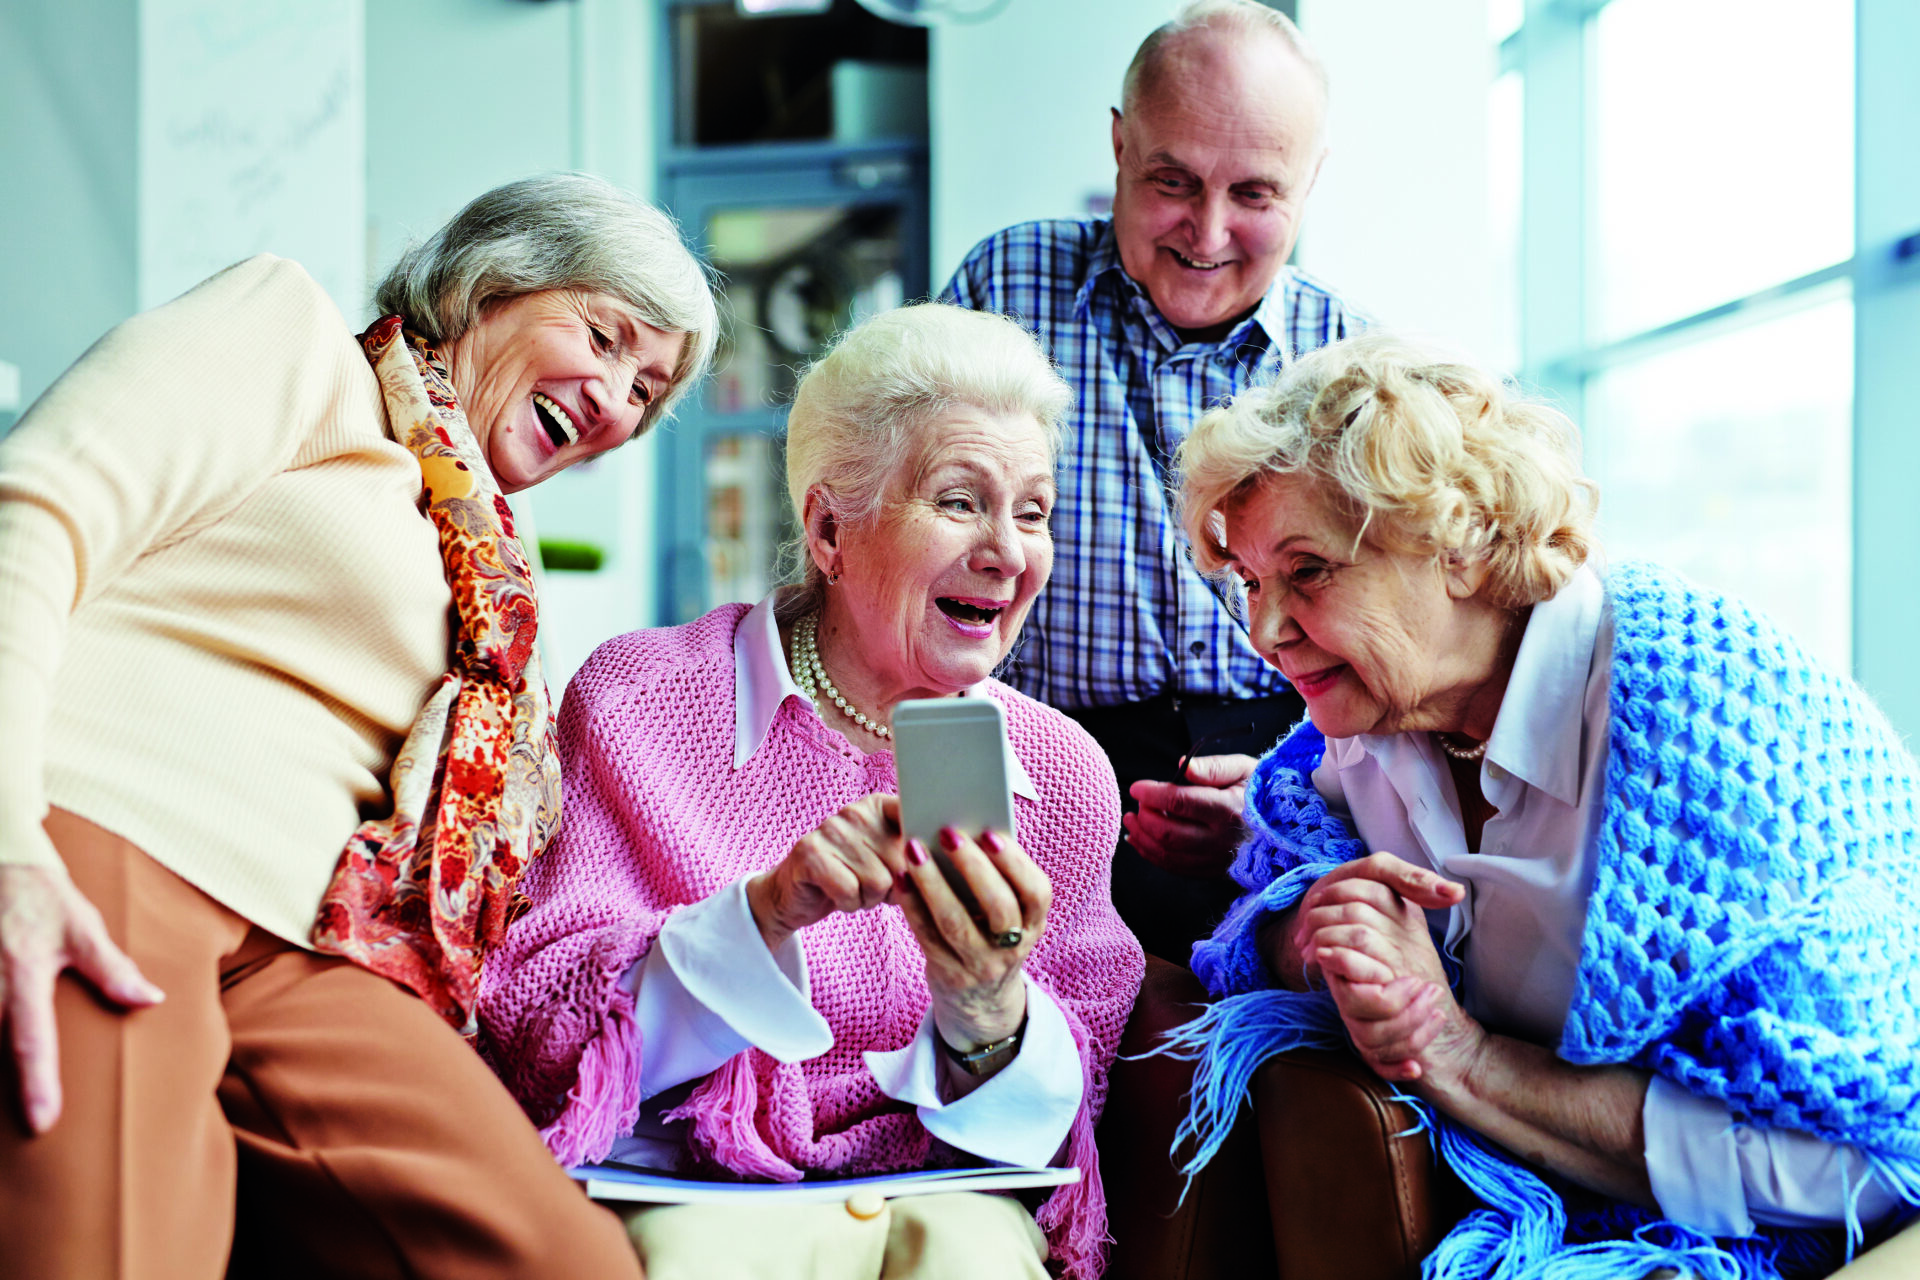 Les seniors et les nouvelles technologies - Seniors Online